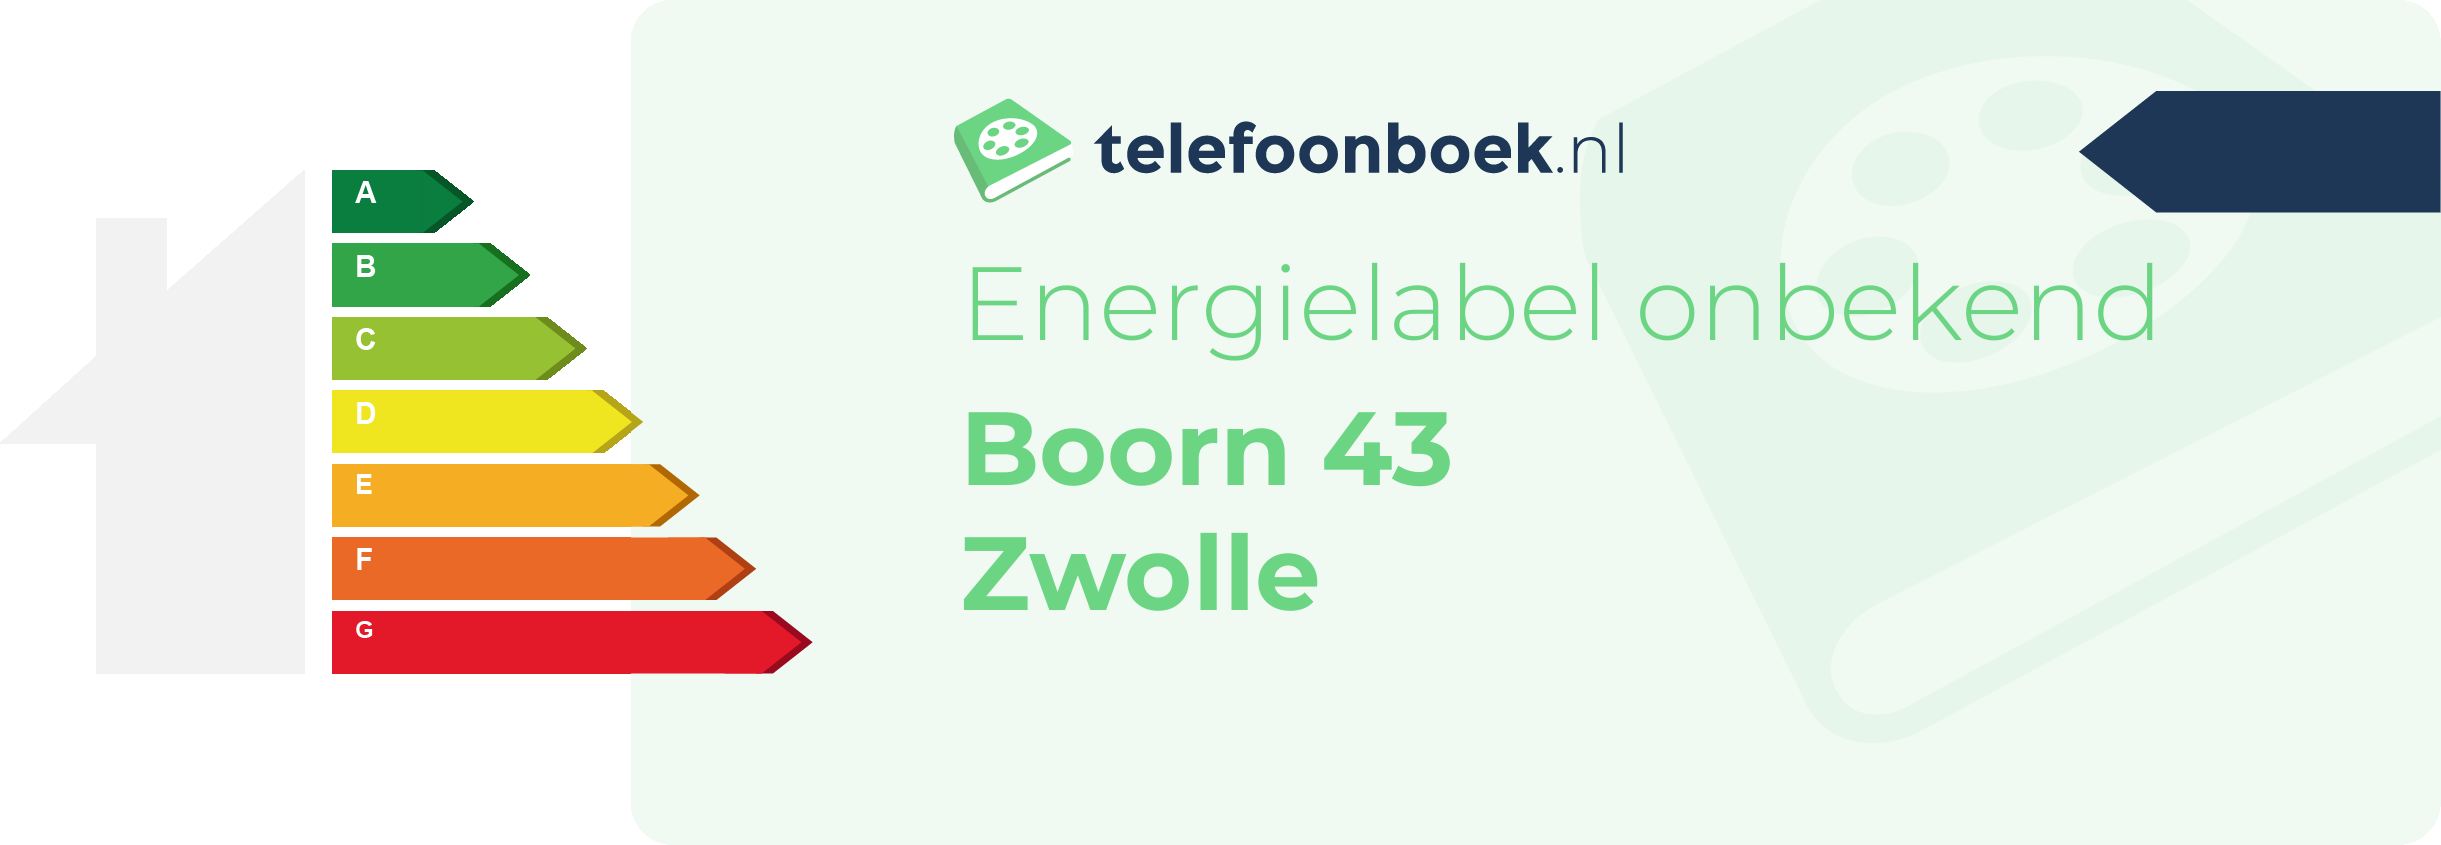 Energielabel Boorn 43 Zwolle